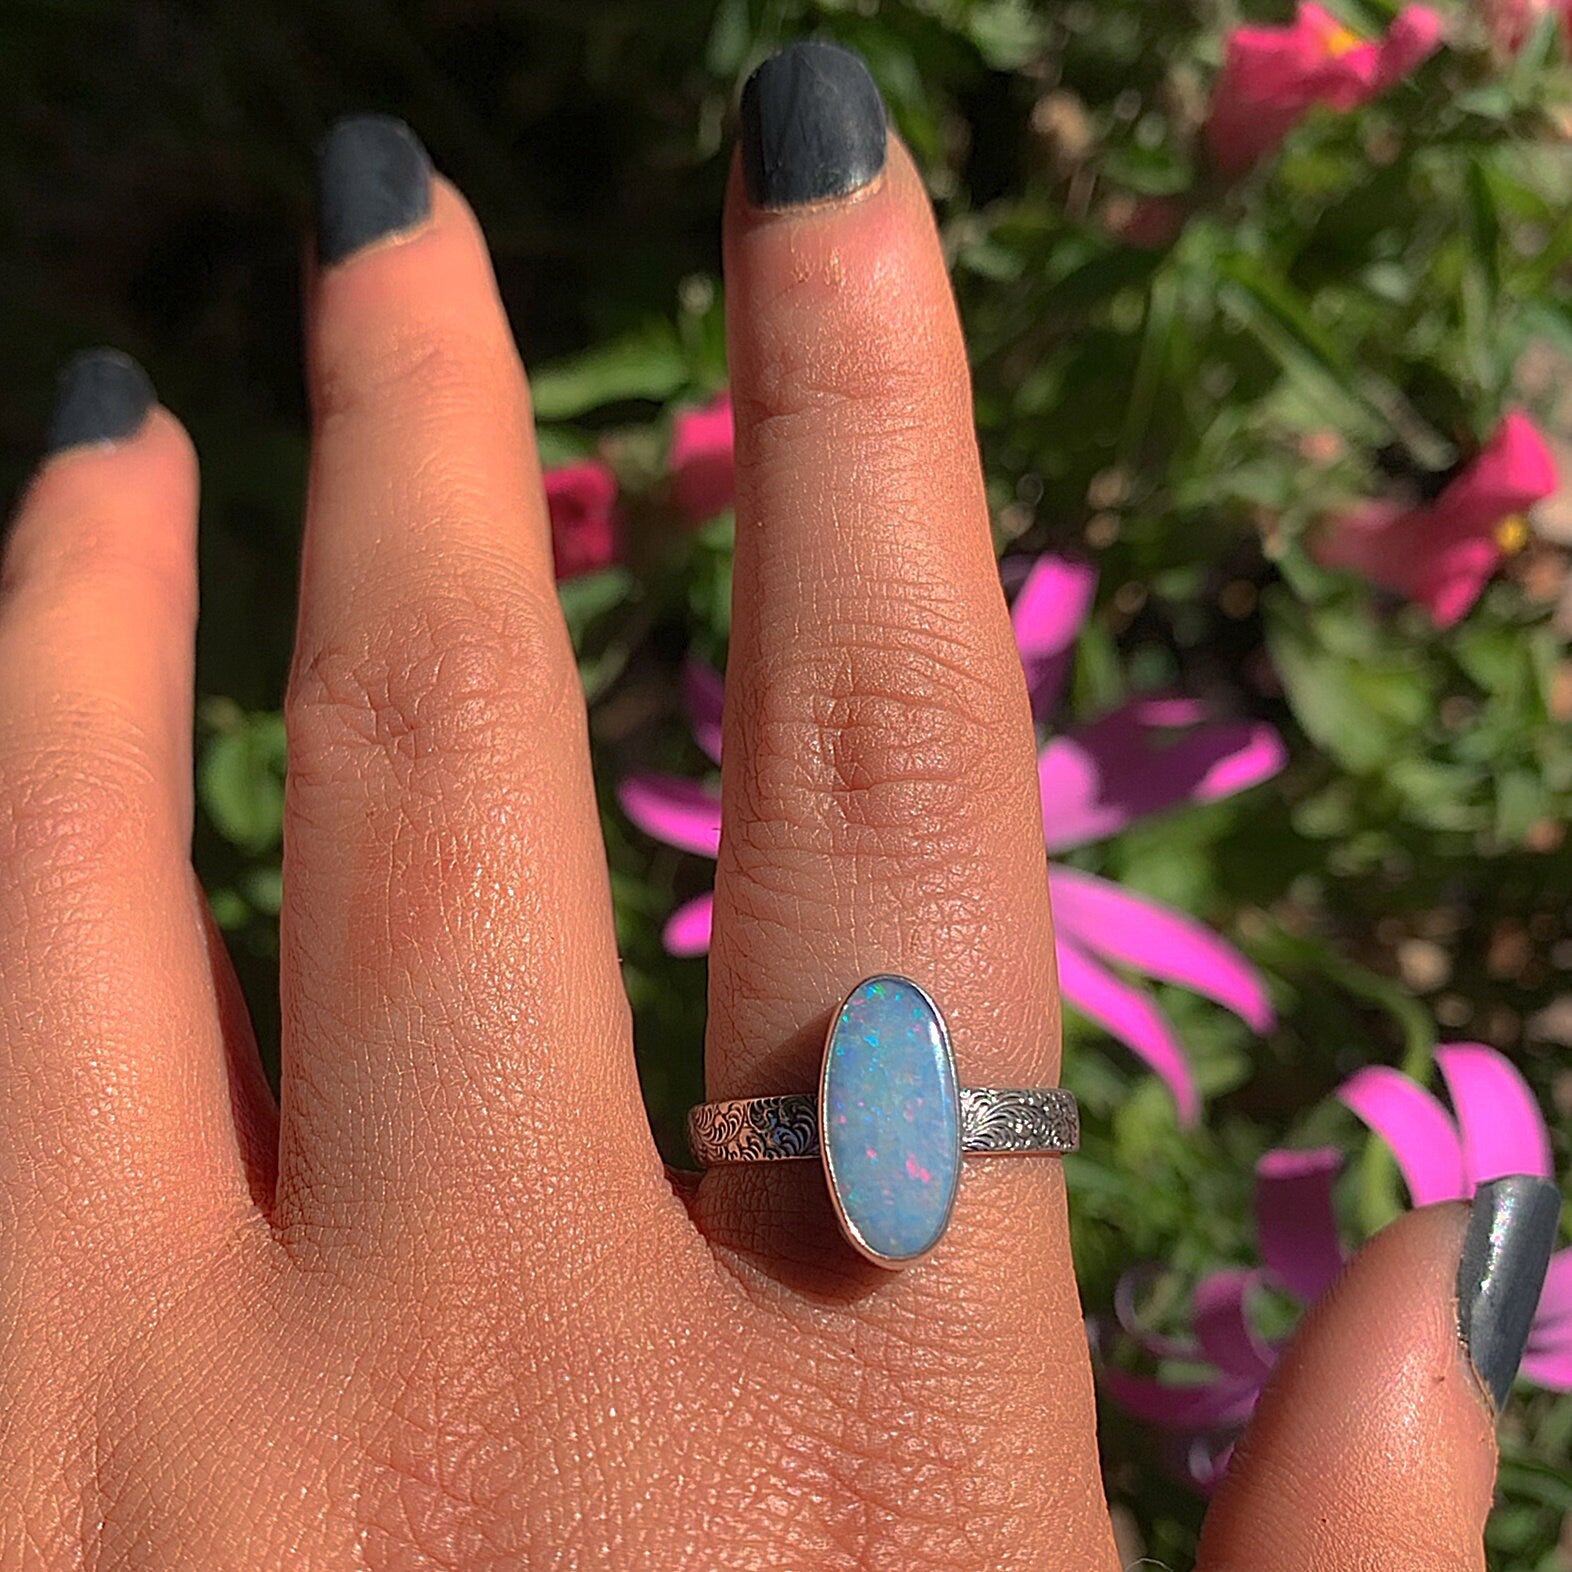 Australian Opal Ring - Size 9 to 9 1/4 - Sterling Silver - Lightning Ridge Opal Ring, Dainty Opal Jewelry, Blue Australian Opal Jewelry